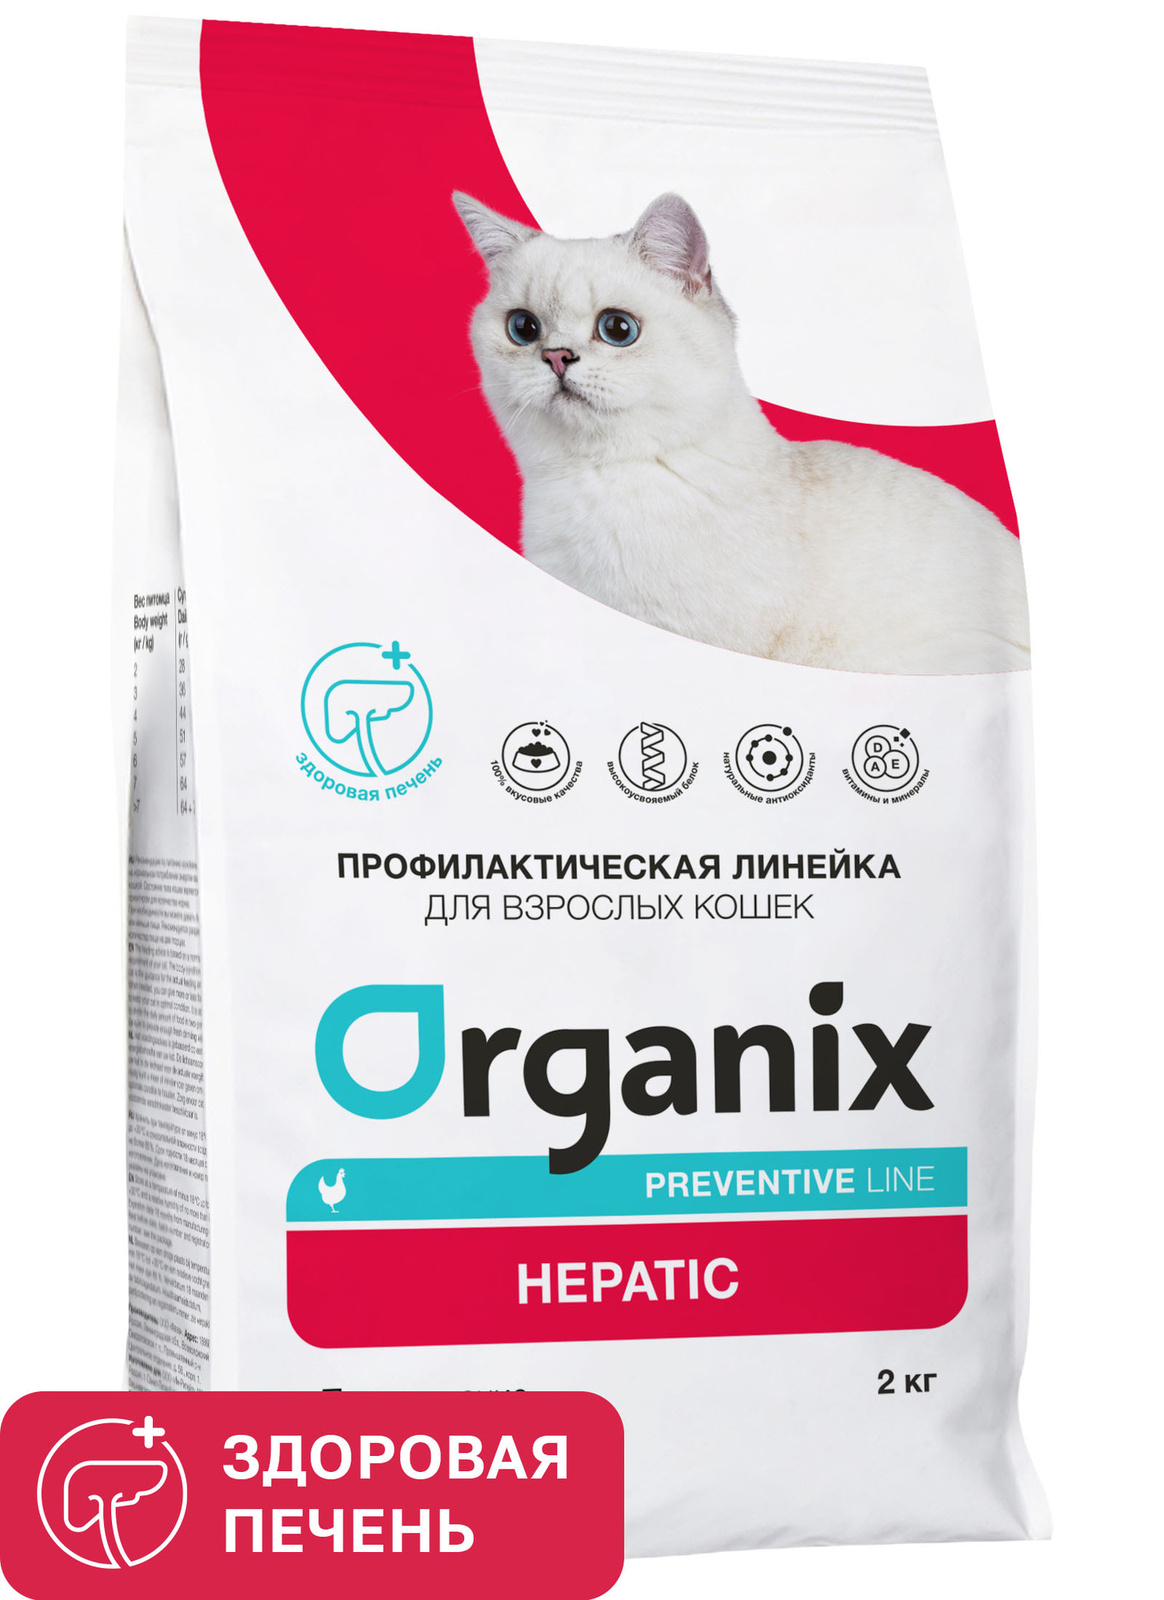 Organix Preventive Line Organix Preventive Line hepatic сухой корм для кошек Поддержание здоровья печени (600 г)